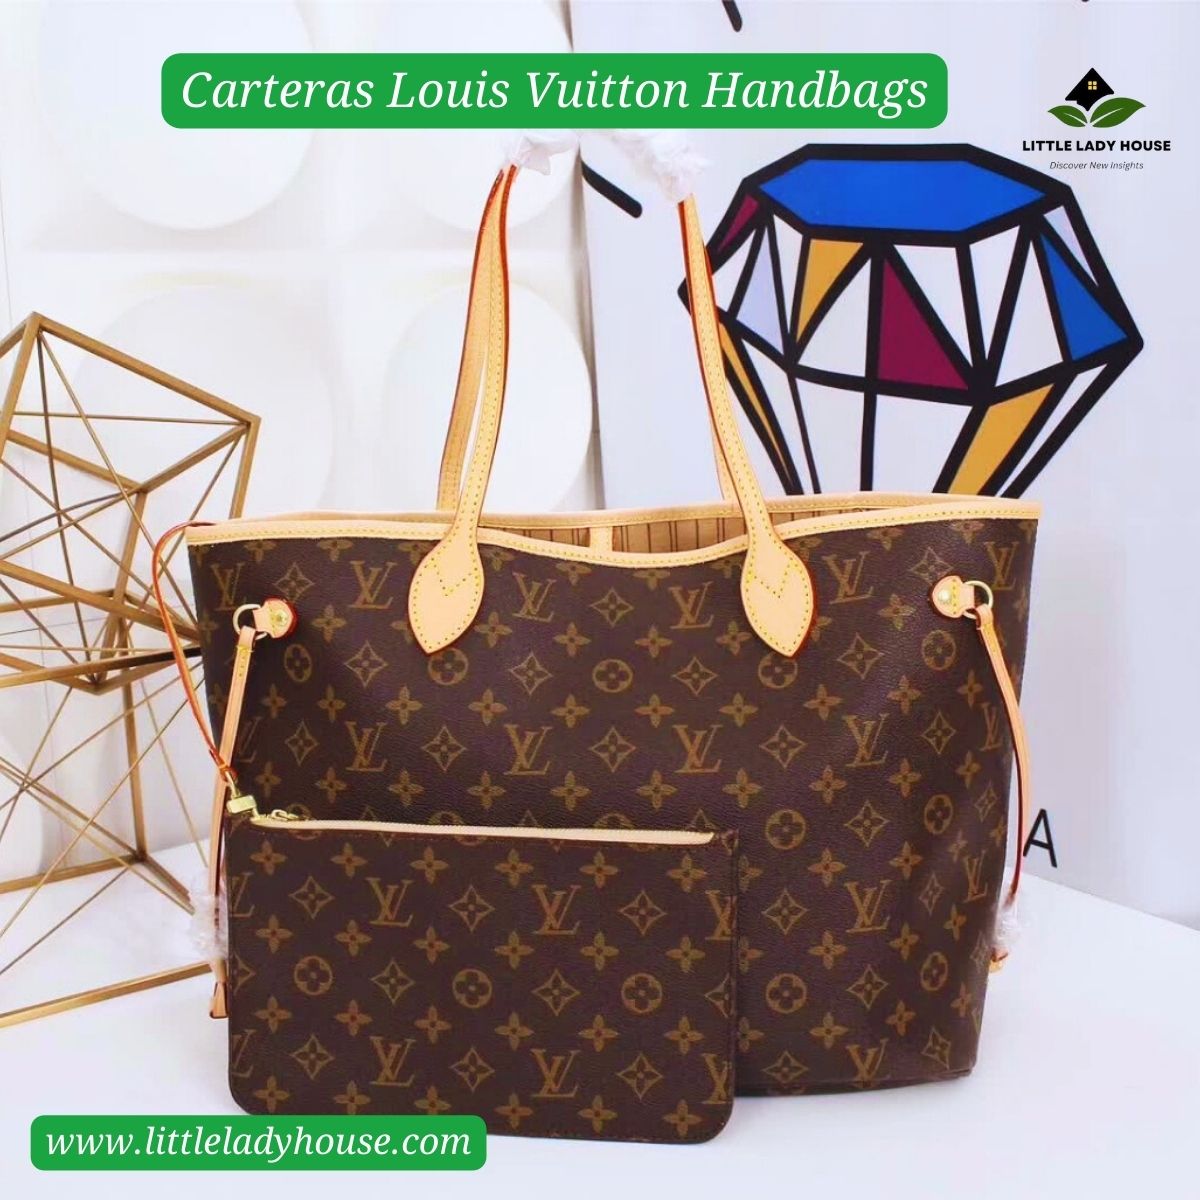 Carteras Louis Vuitton Handbags